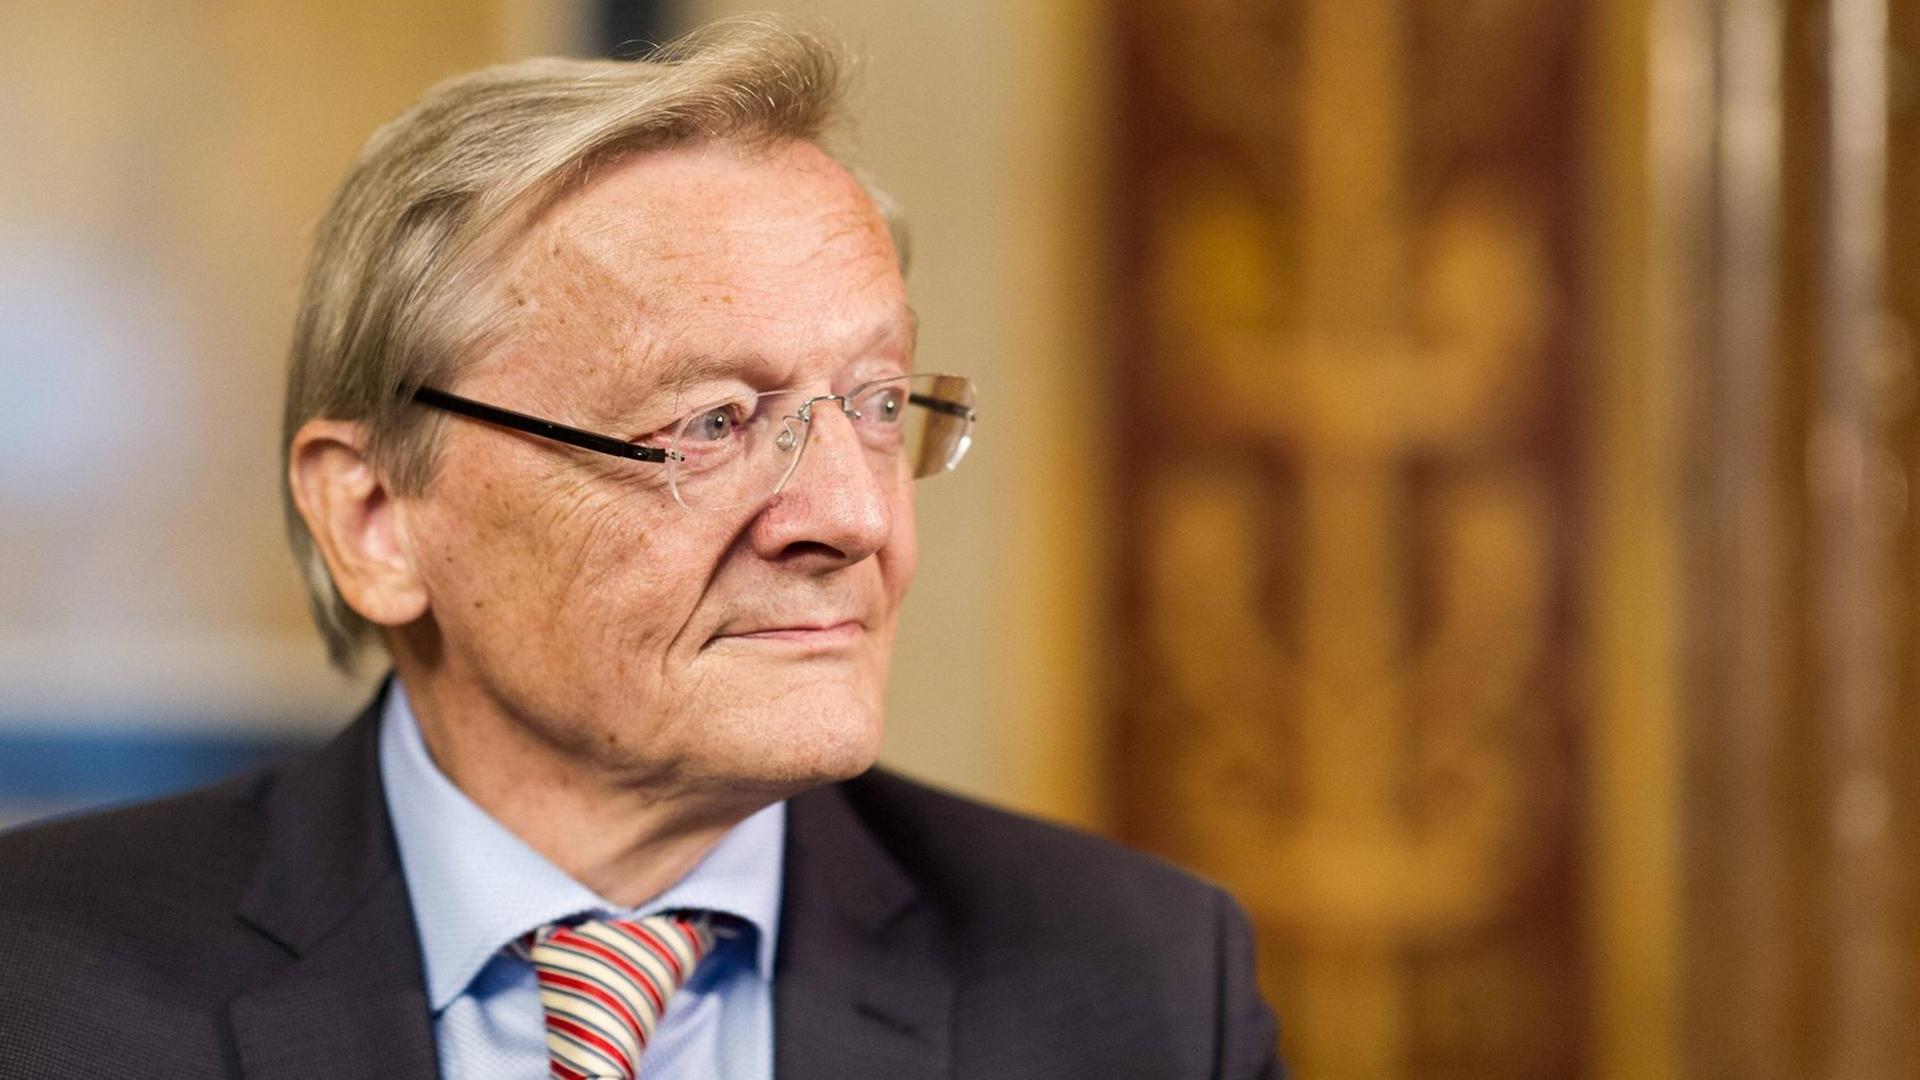 Der ehemalige österreichische Bundeskanzler Wolfgang Schüssel (ÖVP) blickt zur Seite